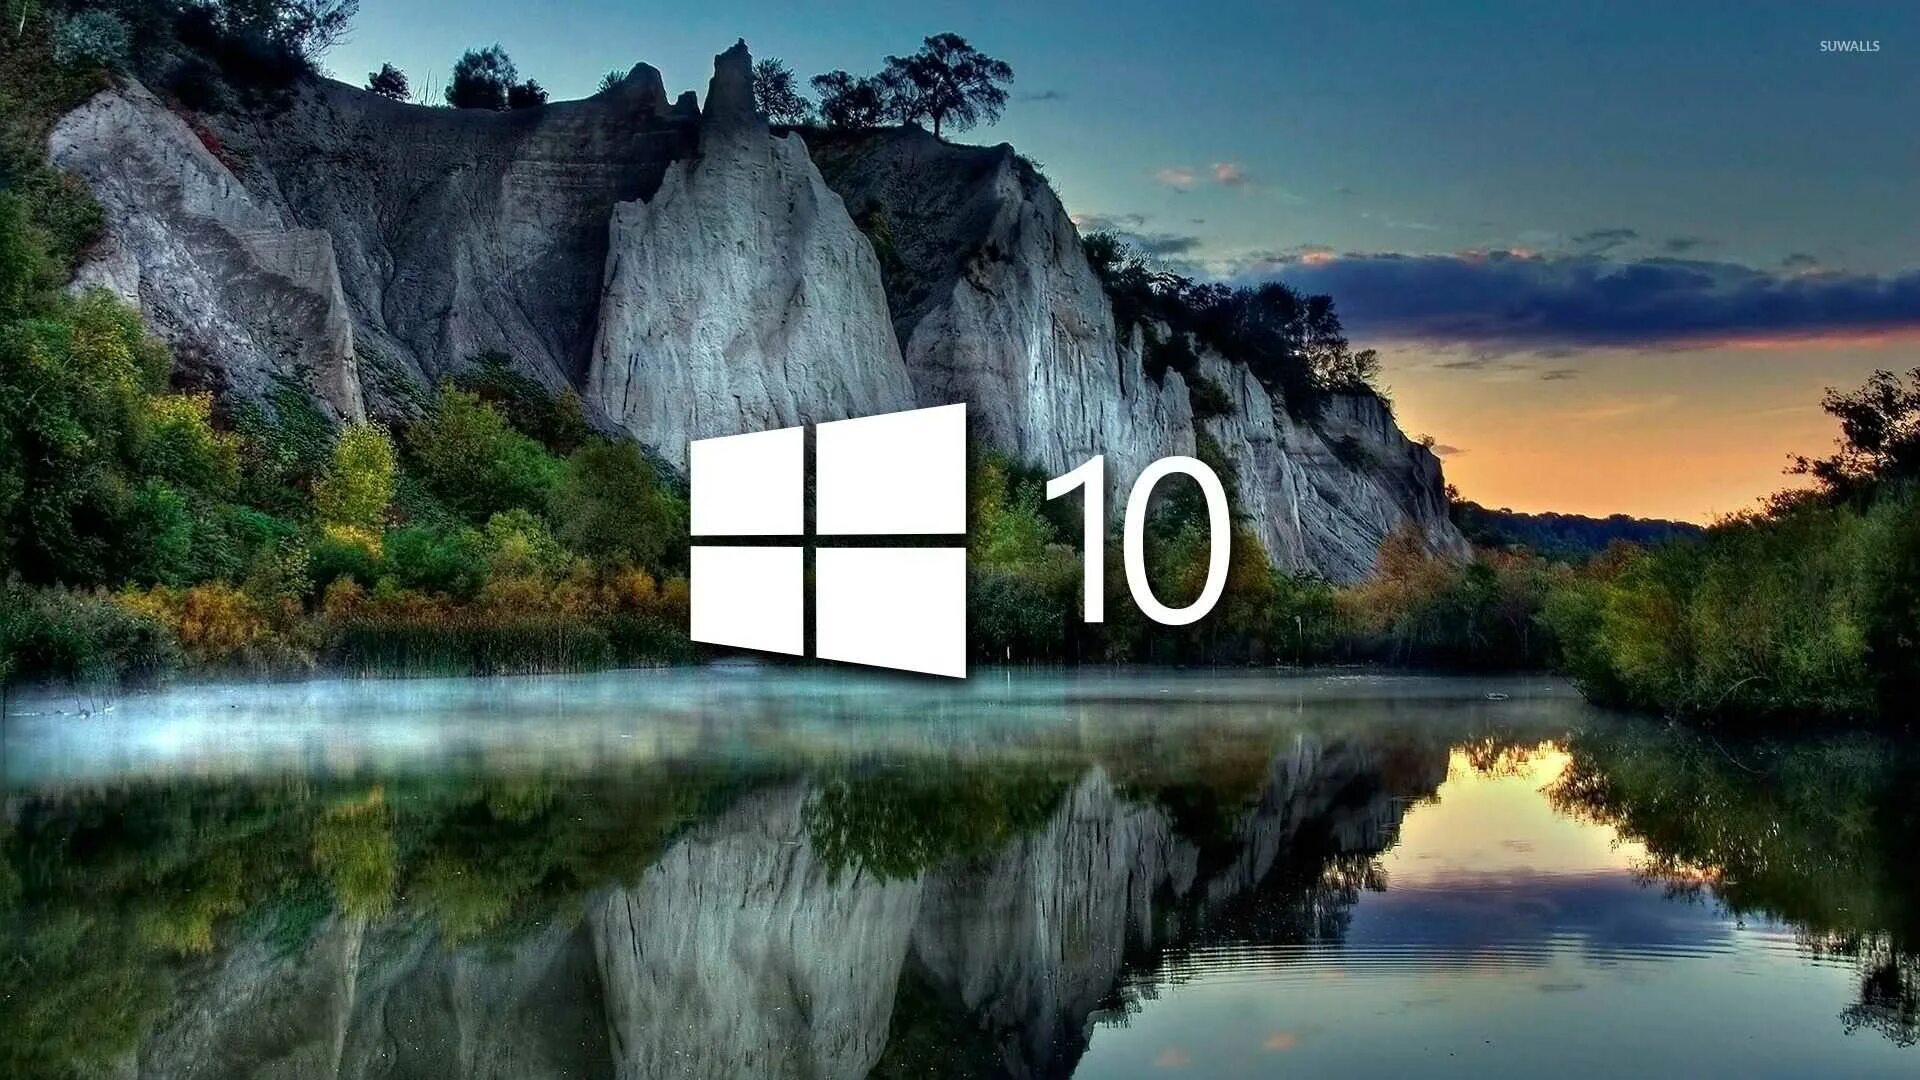 Обои на 10 4. Красивая заставка виндовс 10. Фоновый рисунок виндовс 10. Рисунок рабочего стола Windows 10. Картинка для фона рабочего стола Windows 10.